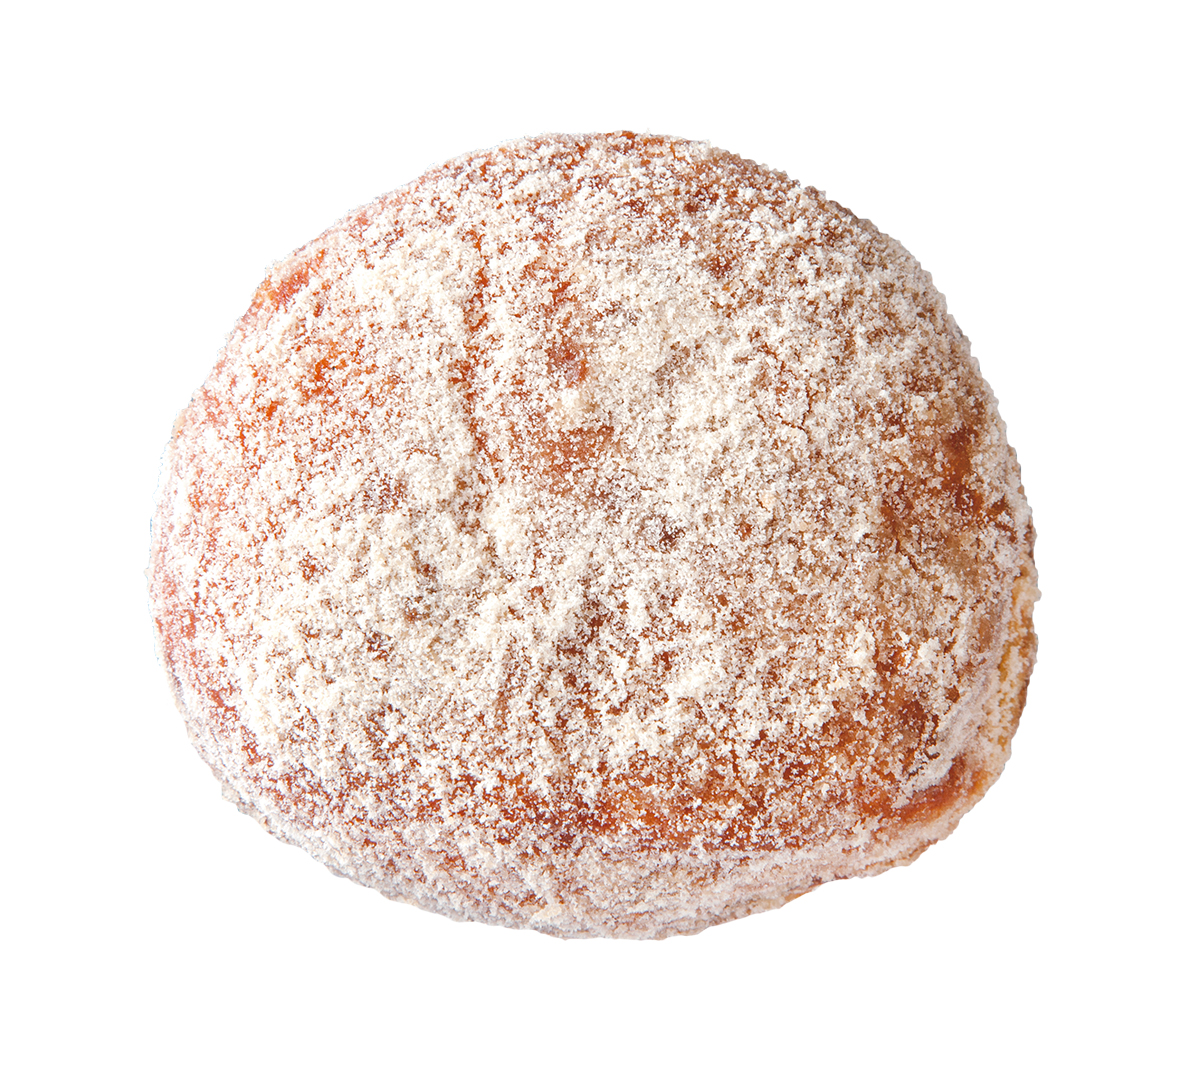 『I'm donut?（アイムドーナツ）』<br />
I'm donut?（アイムドーナツ） 205円<br />
表面のきび糖はやさしい甘みでシンプルな生地を邪魔しない